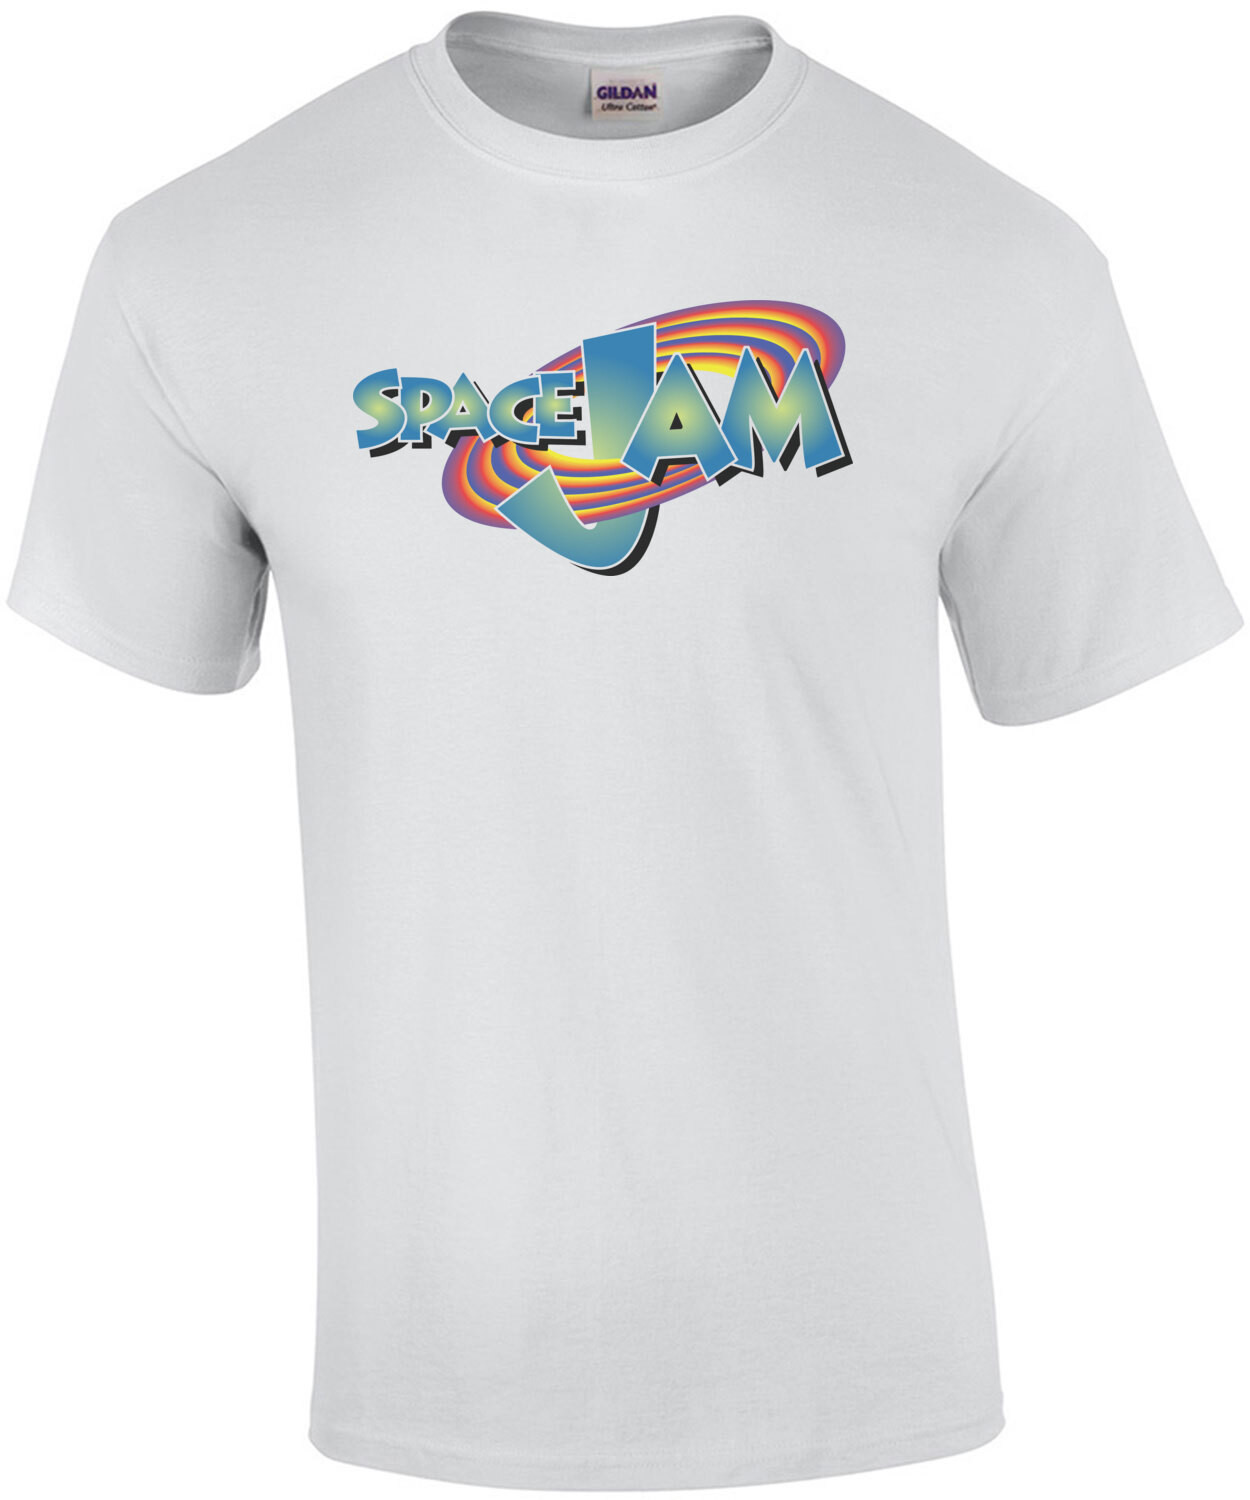 Space Jam - 90's T-Shirt